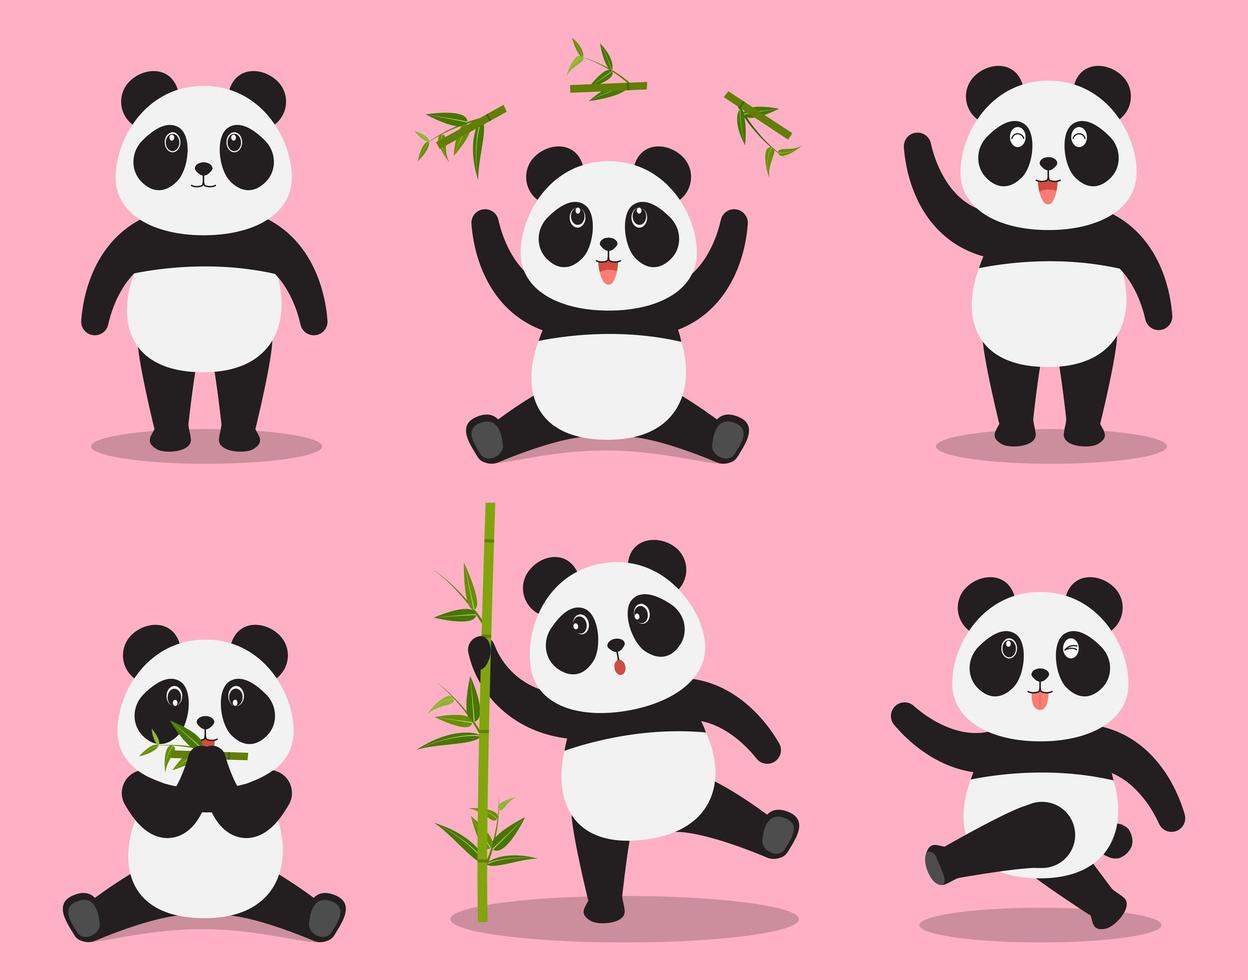 De leuke vector van het pandabeeldverhaal die in verschillende emotie op roze achtergrond wordt geplaatst